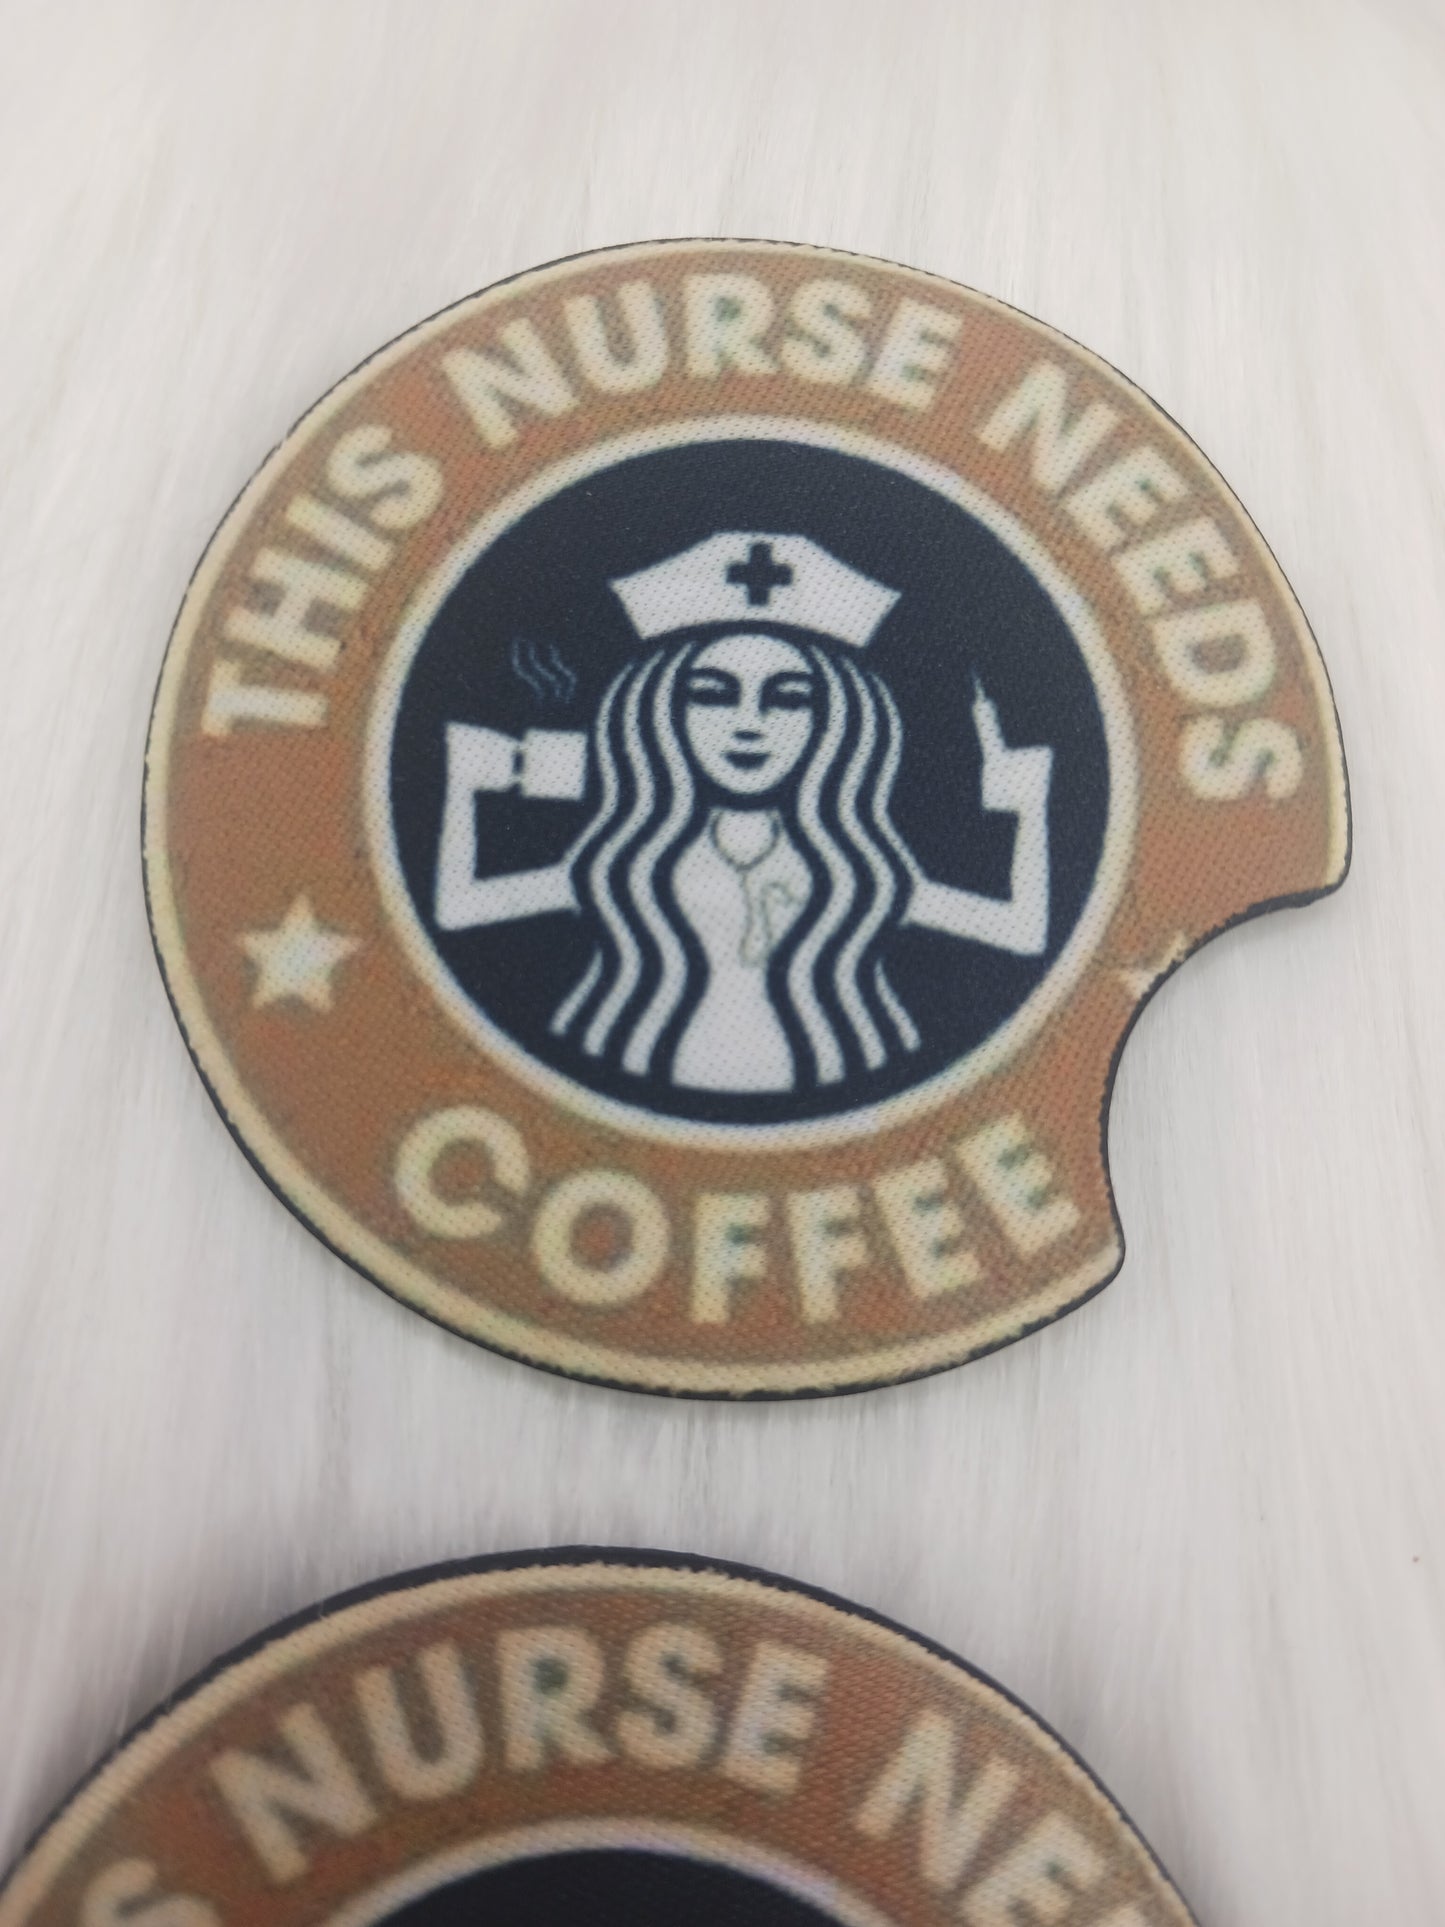 This nurse needs coffee car coasters